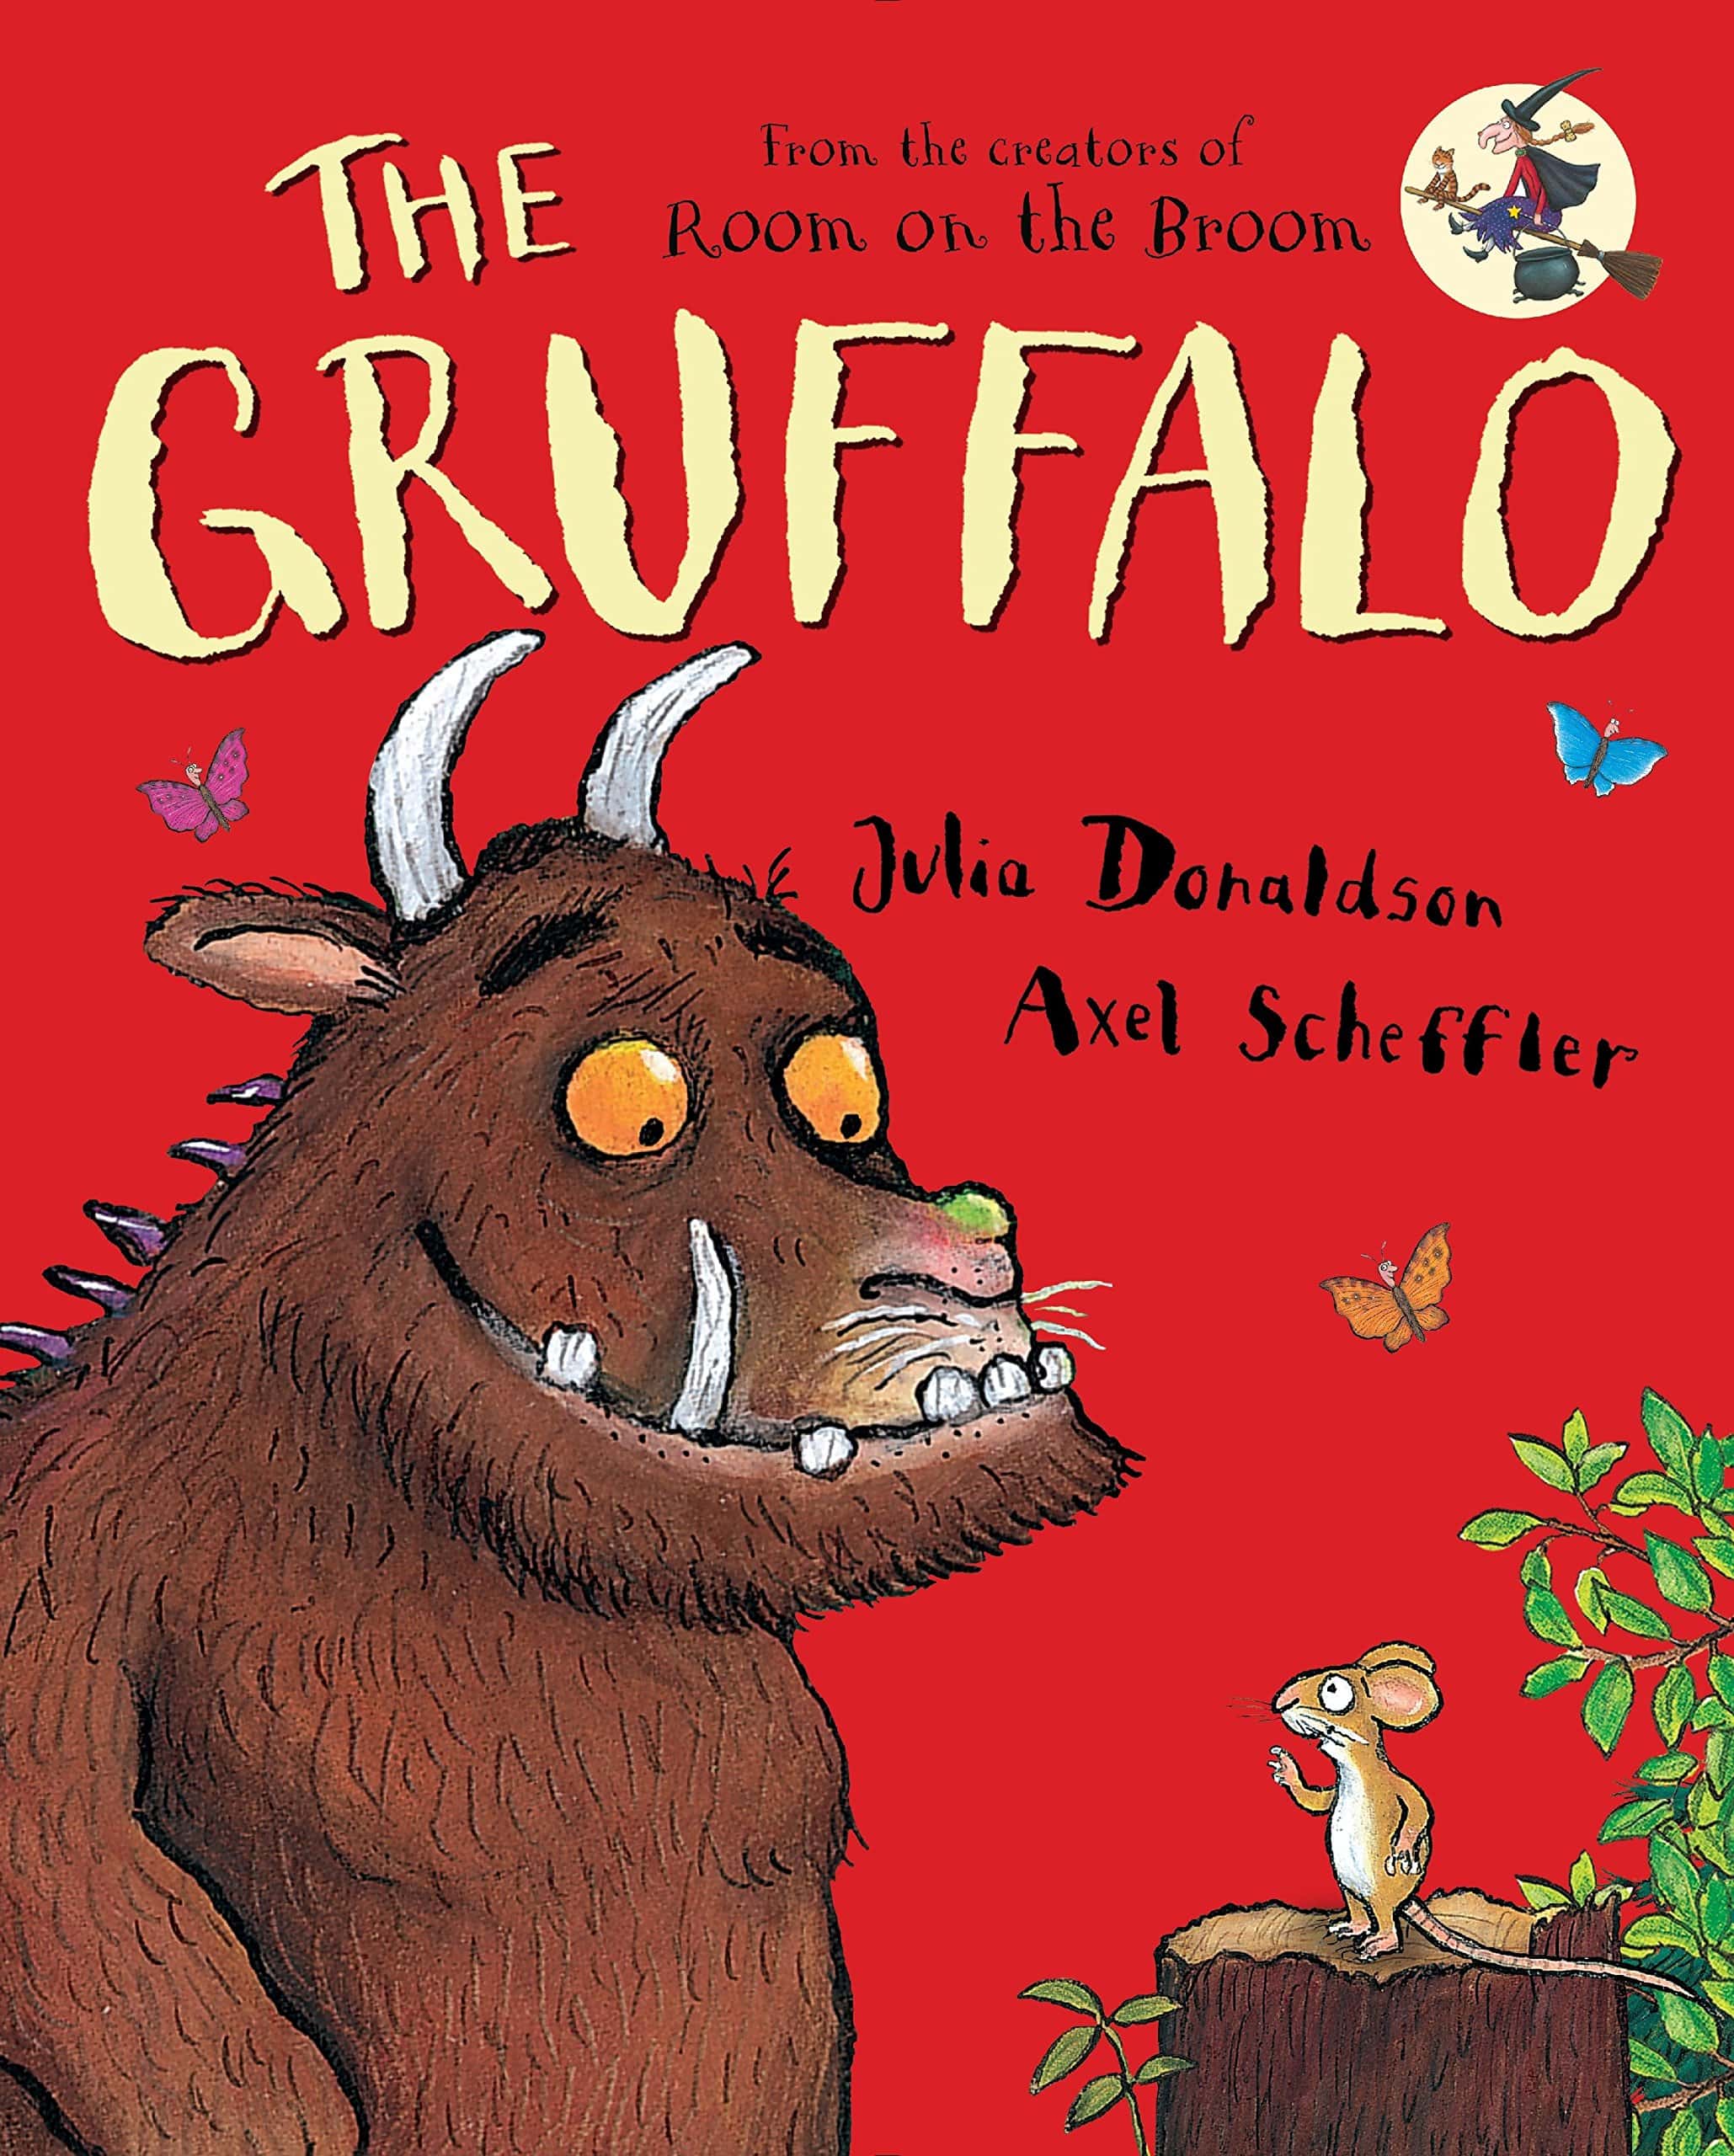 "The Gruffalo" by Julia Donaldson